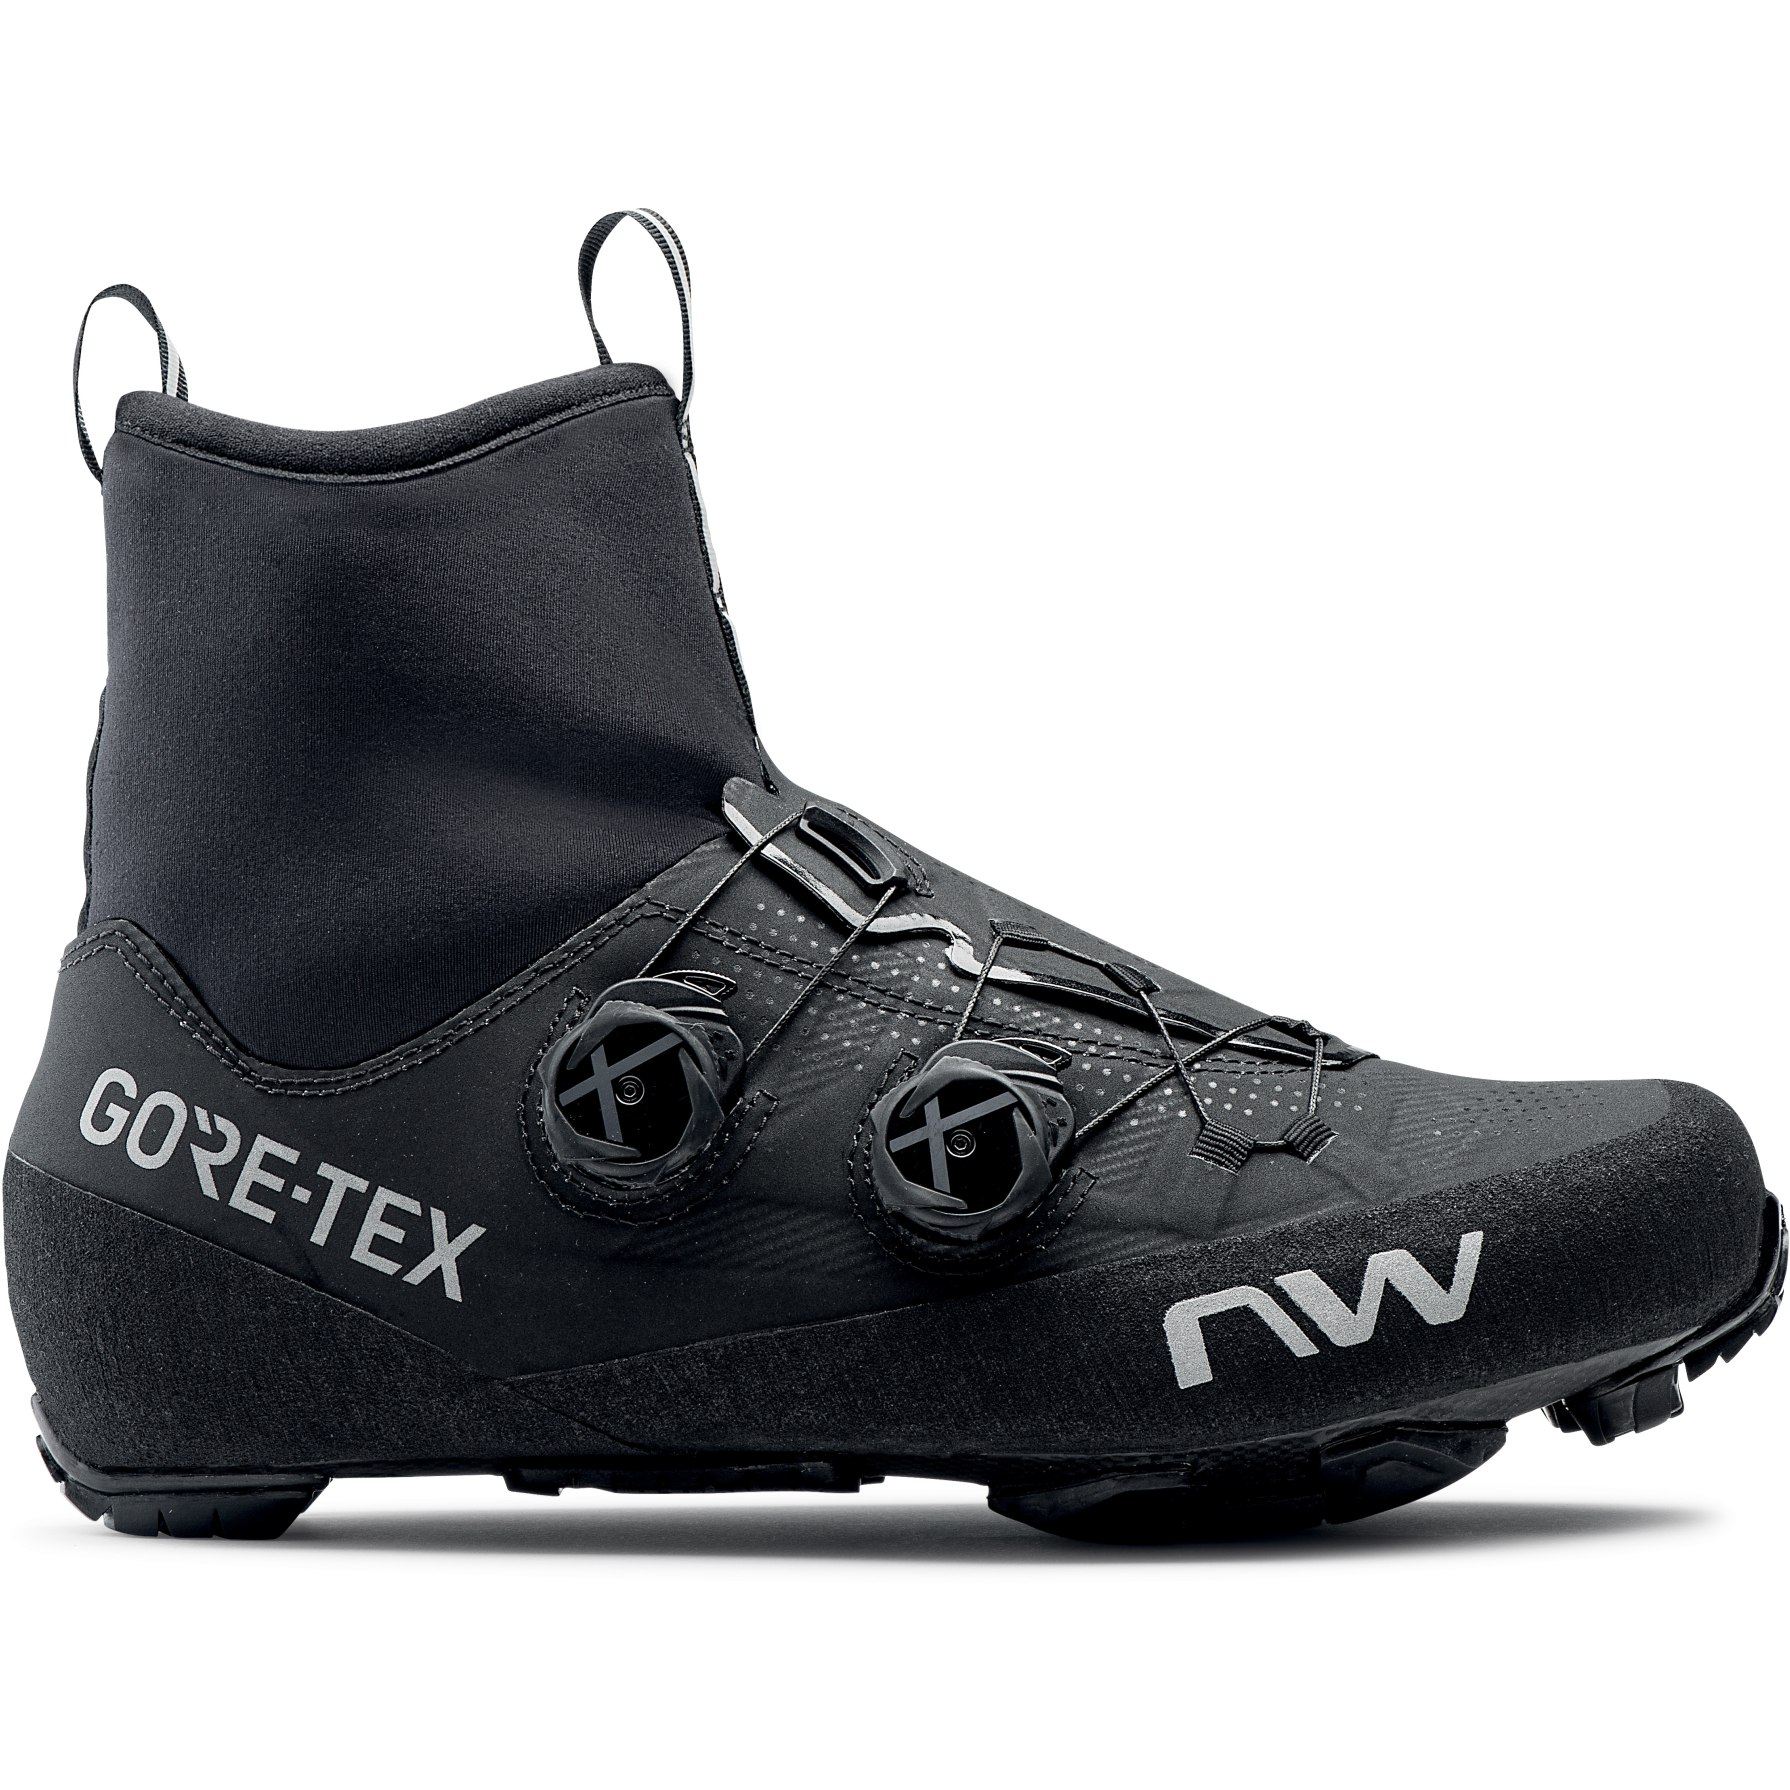 Produktbild von Northwave Flagship GTX MTB Schuhe - schwarz 10